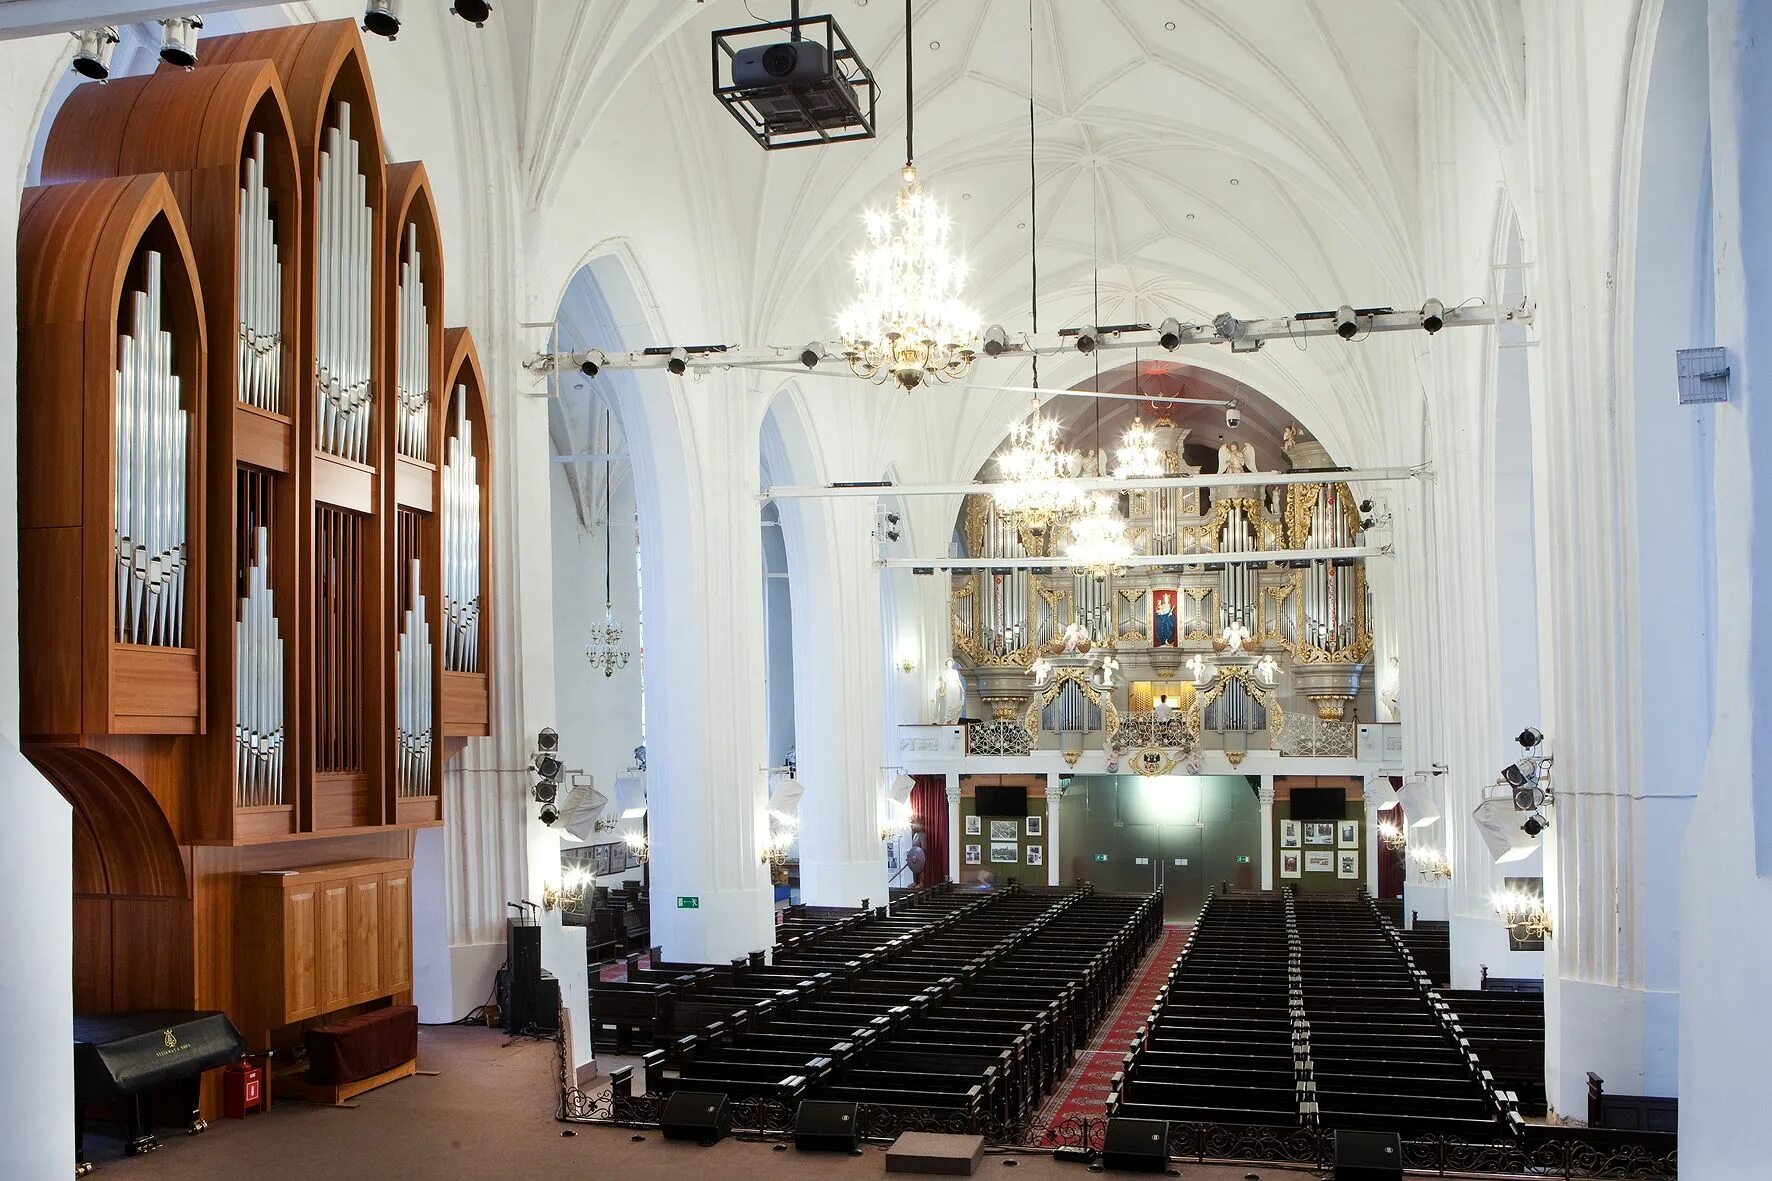 Орган в калининграде купить билет. Калининград органный концерт в кафедральном соборе. Органный зал Канта Калининград.